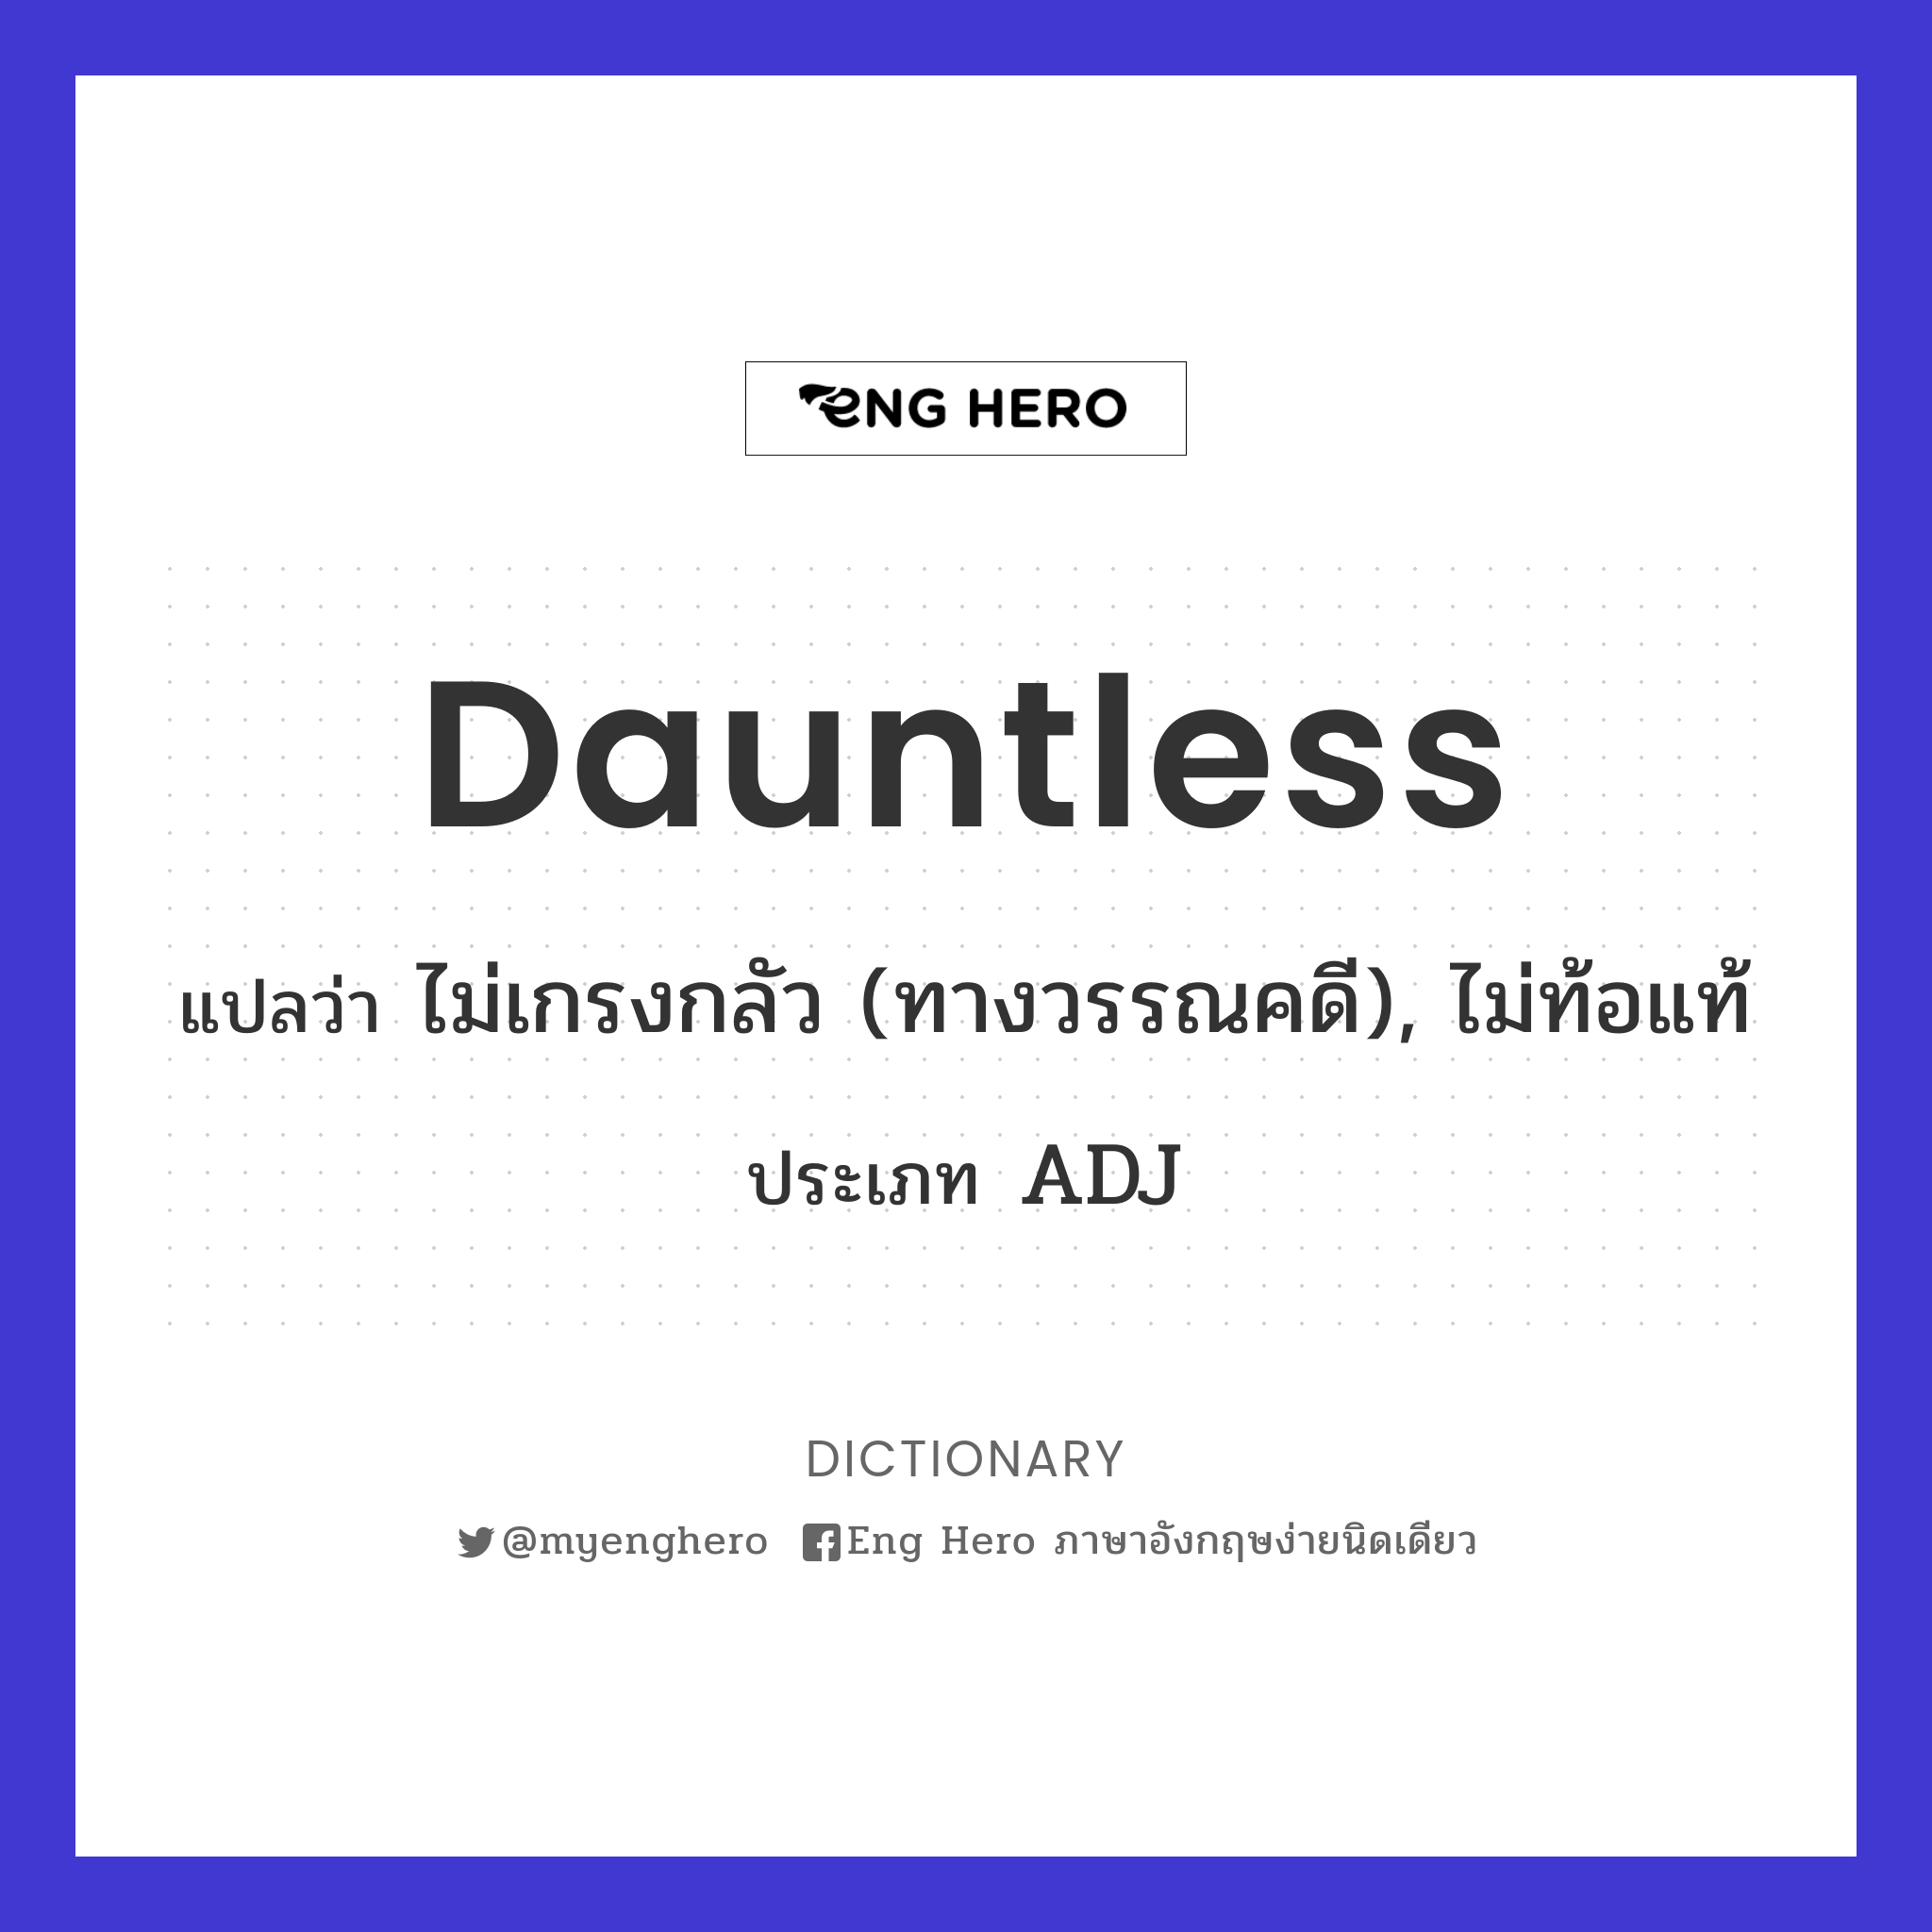 dauntless